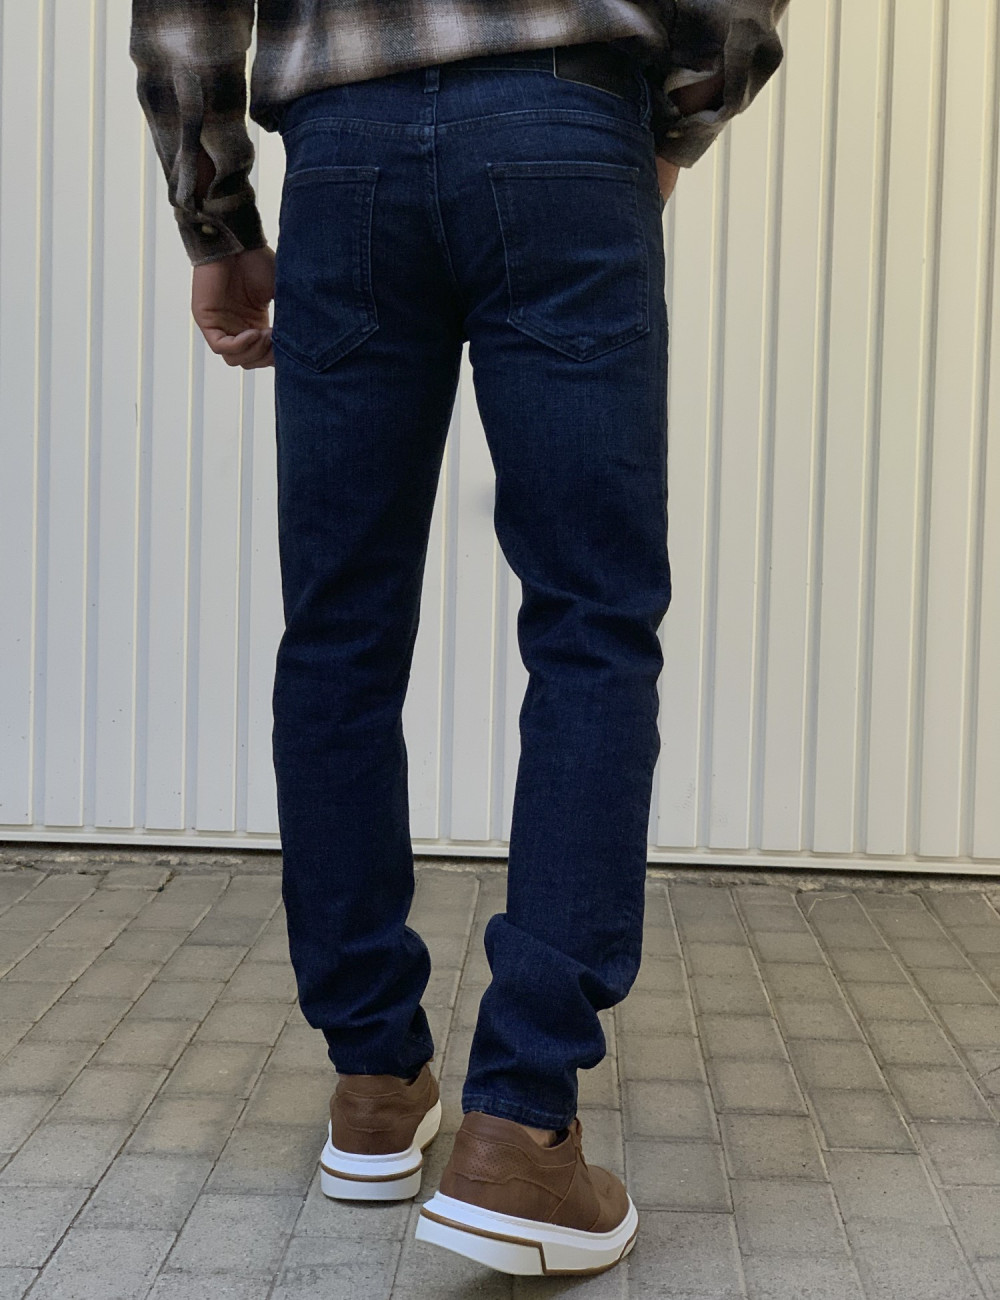 Ανδρικό ελαστίκο Μπλε Σκούρο Τζιν Παντελόνι Με Ελαφρύ Ξέβαμμα πεντάτσεπο με κουμπιά HM5015